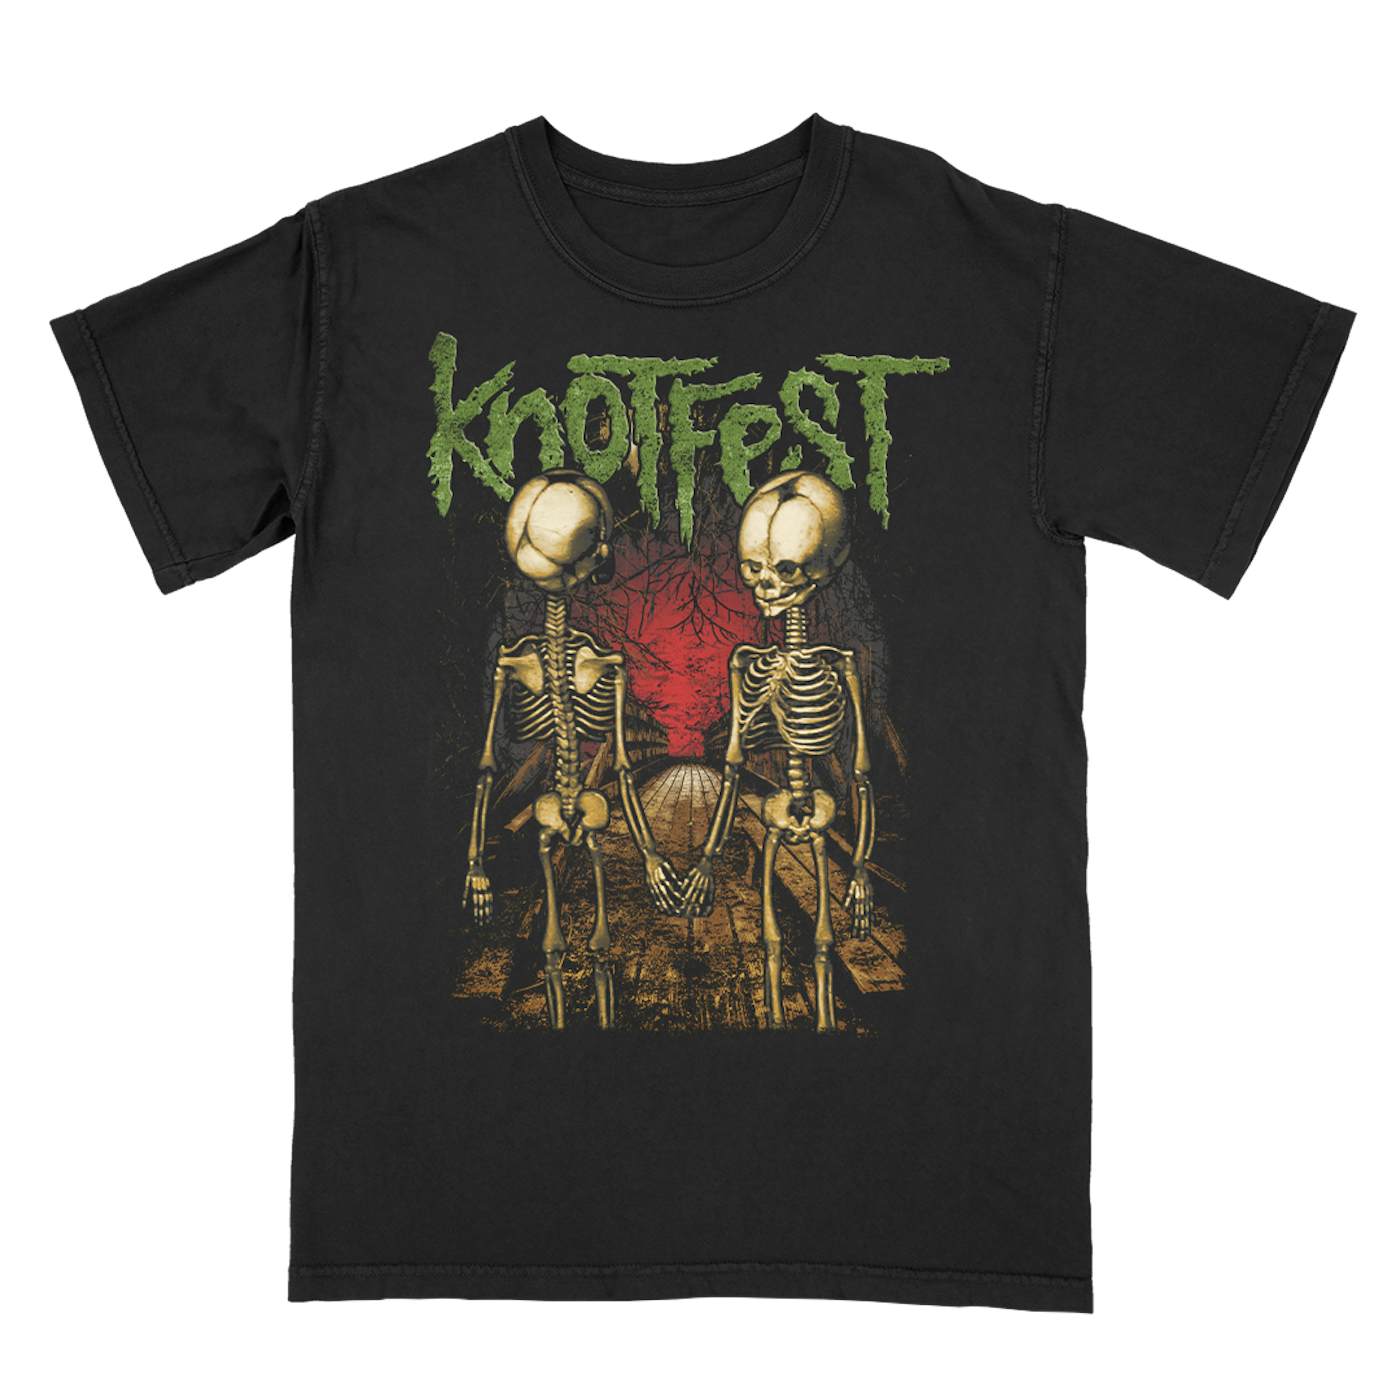 Slipknot Knotfest Leg 3 Skeleton Bridge T-Shirt